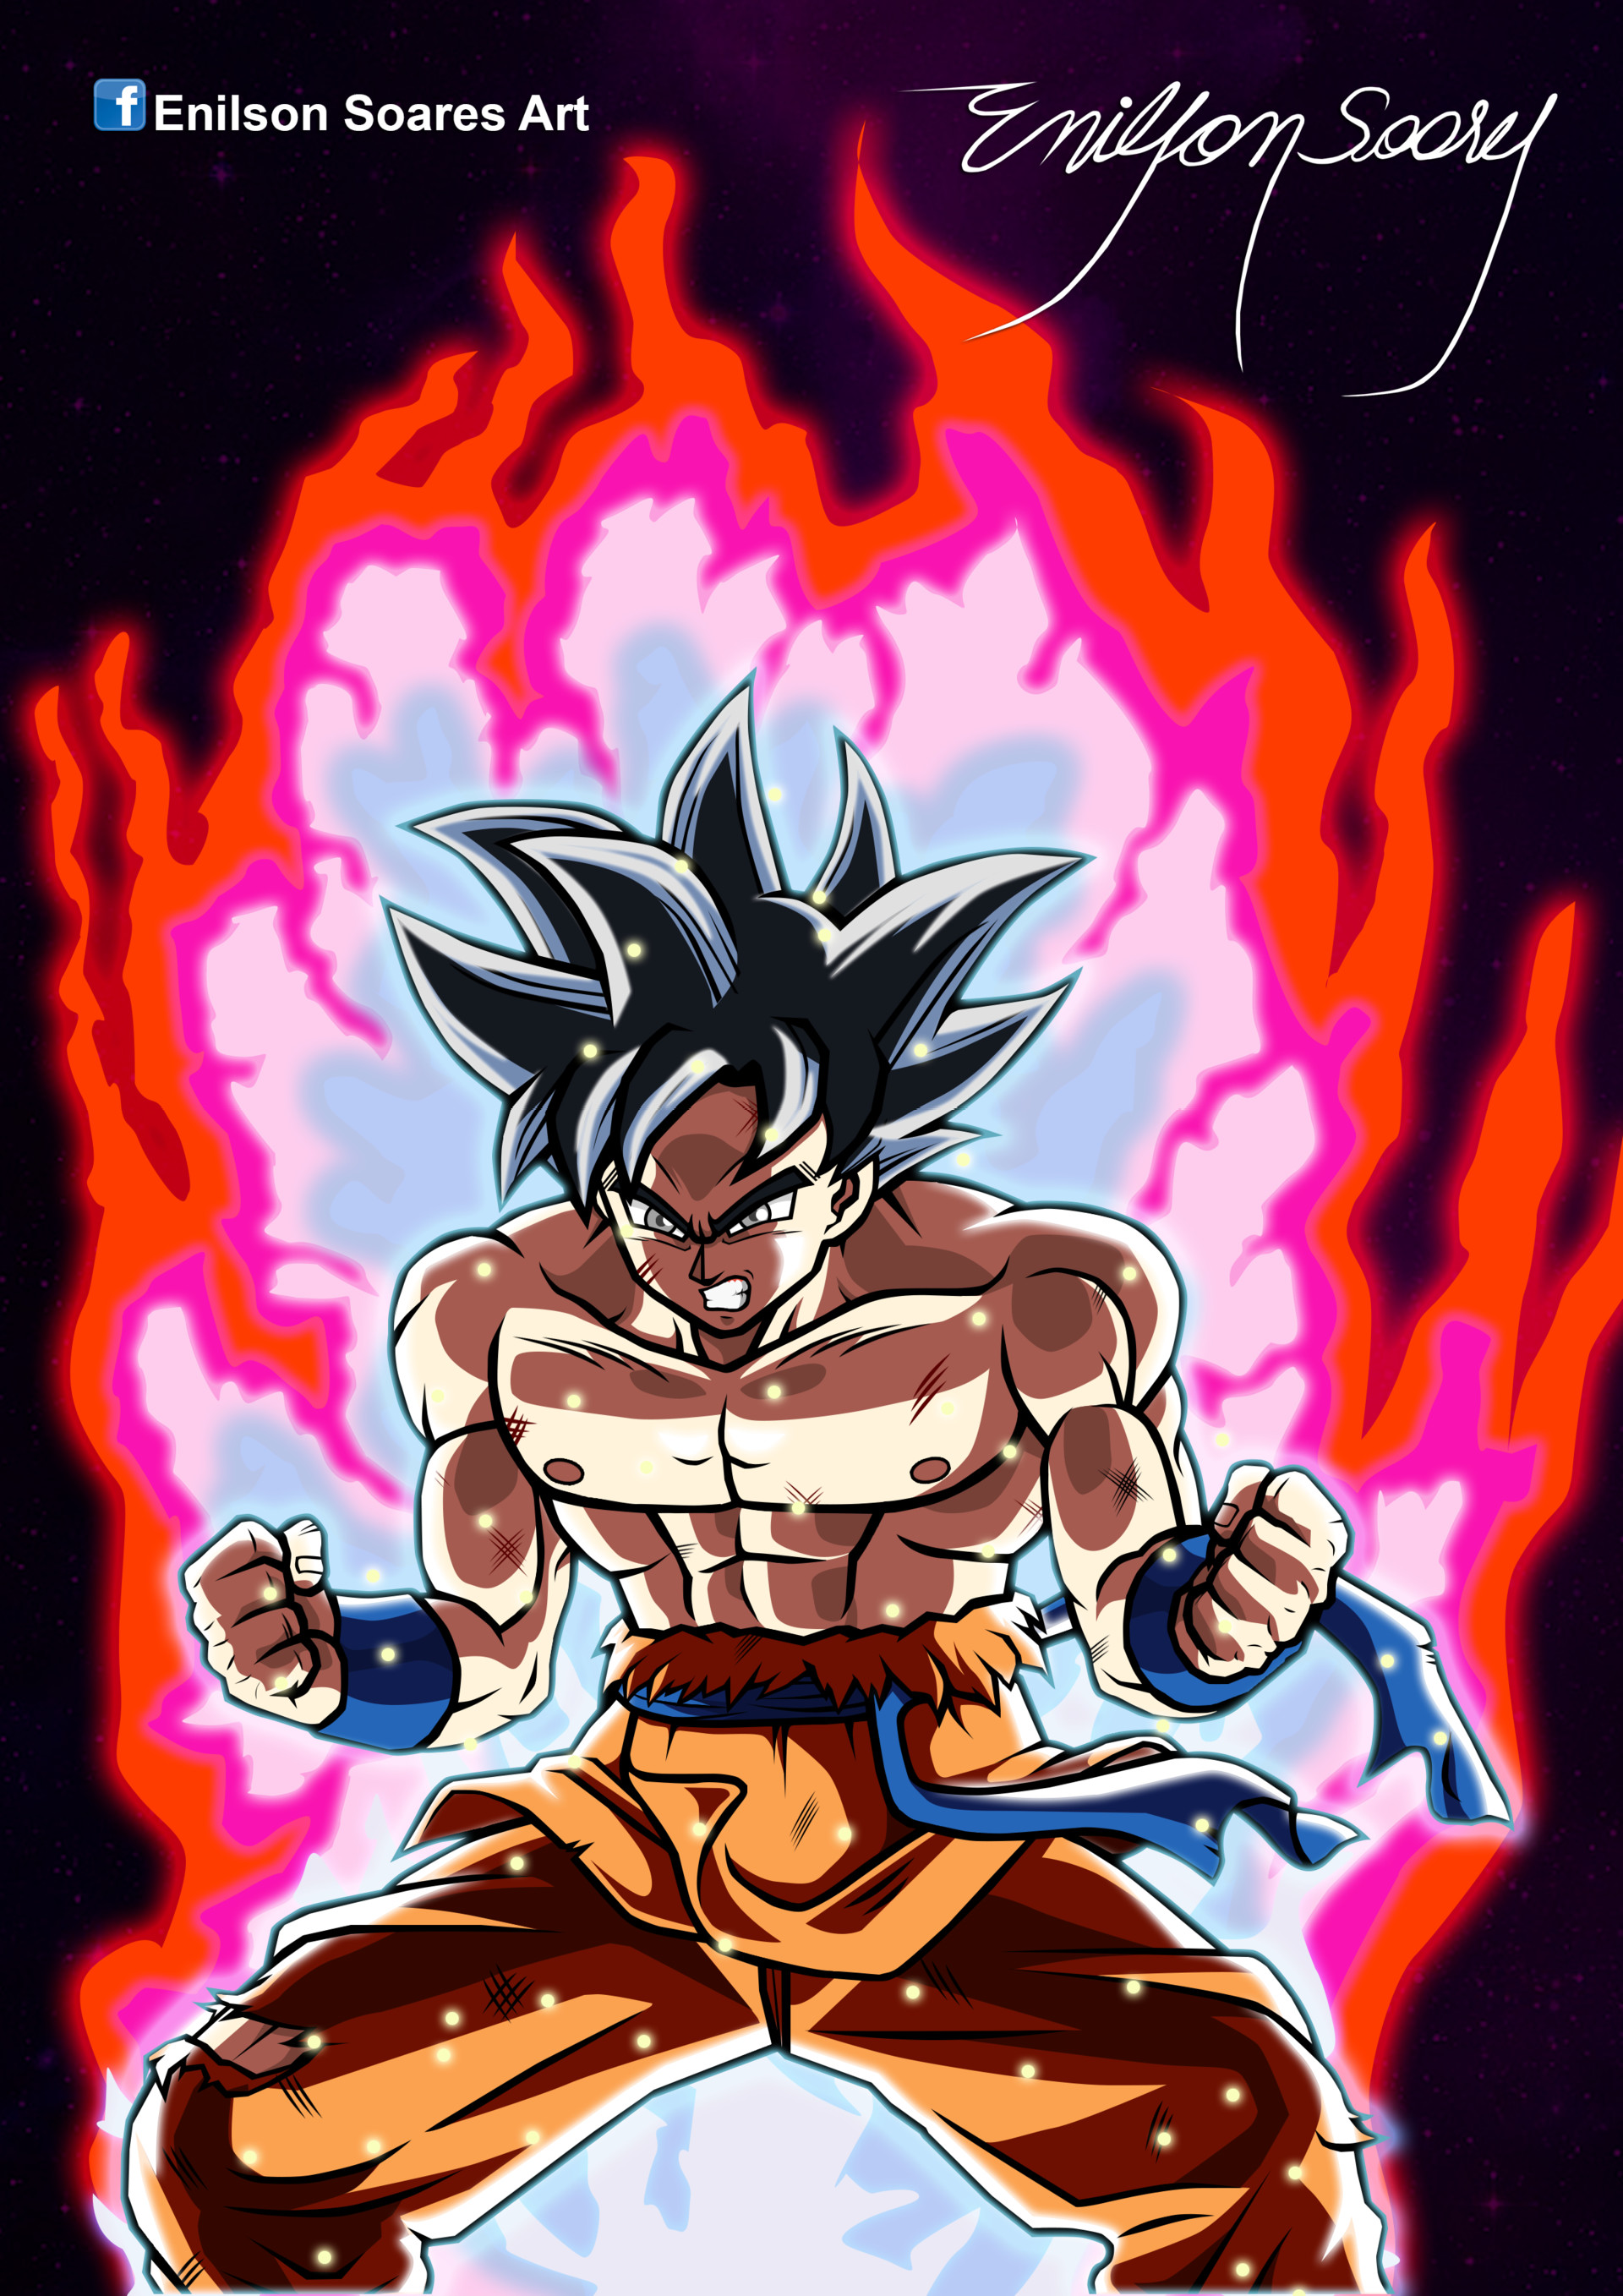 Enilson Soares on X: Goku Instinto Superior Completo!l Caiu como um  Mortal e levantou como um Deus  #DragonBall #DragonBallSuper #DragonBallZ  #Cell #Drawing #Desenho #Fanart #Art #Goku #Vegeta #InstintoSuperior  #KiDosDeuses #migateNoGoku #TorneioDoPoder